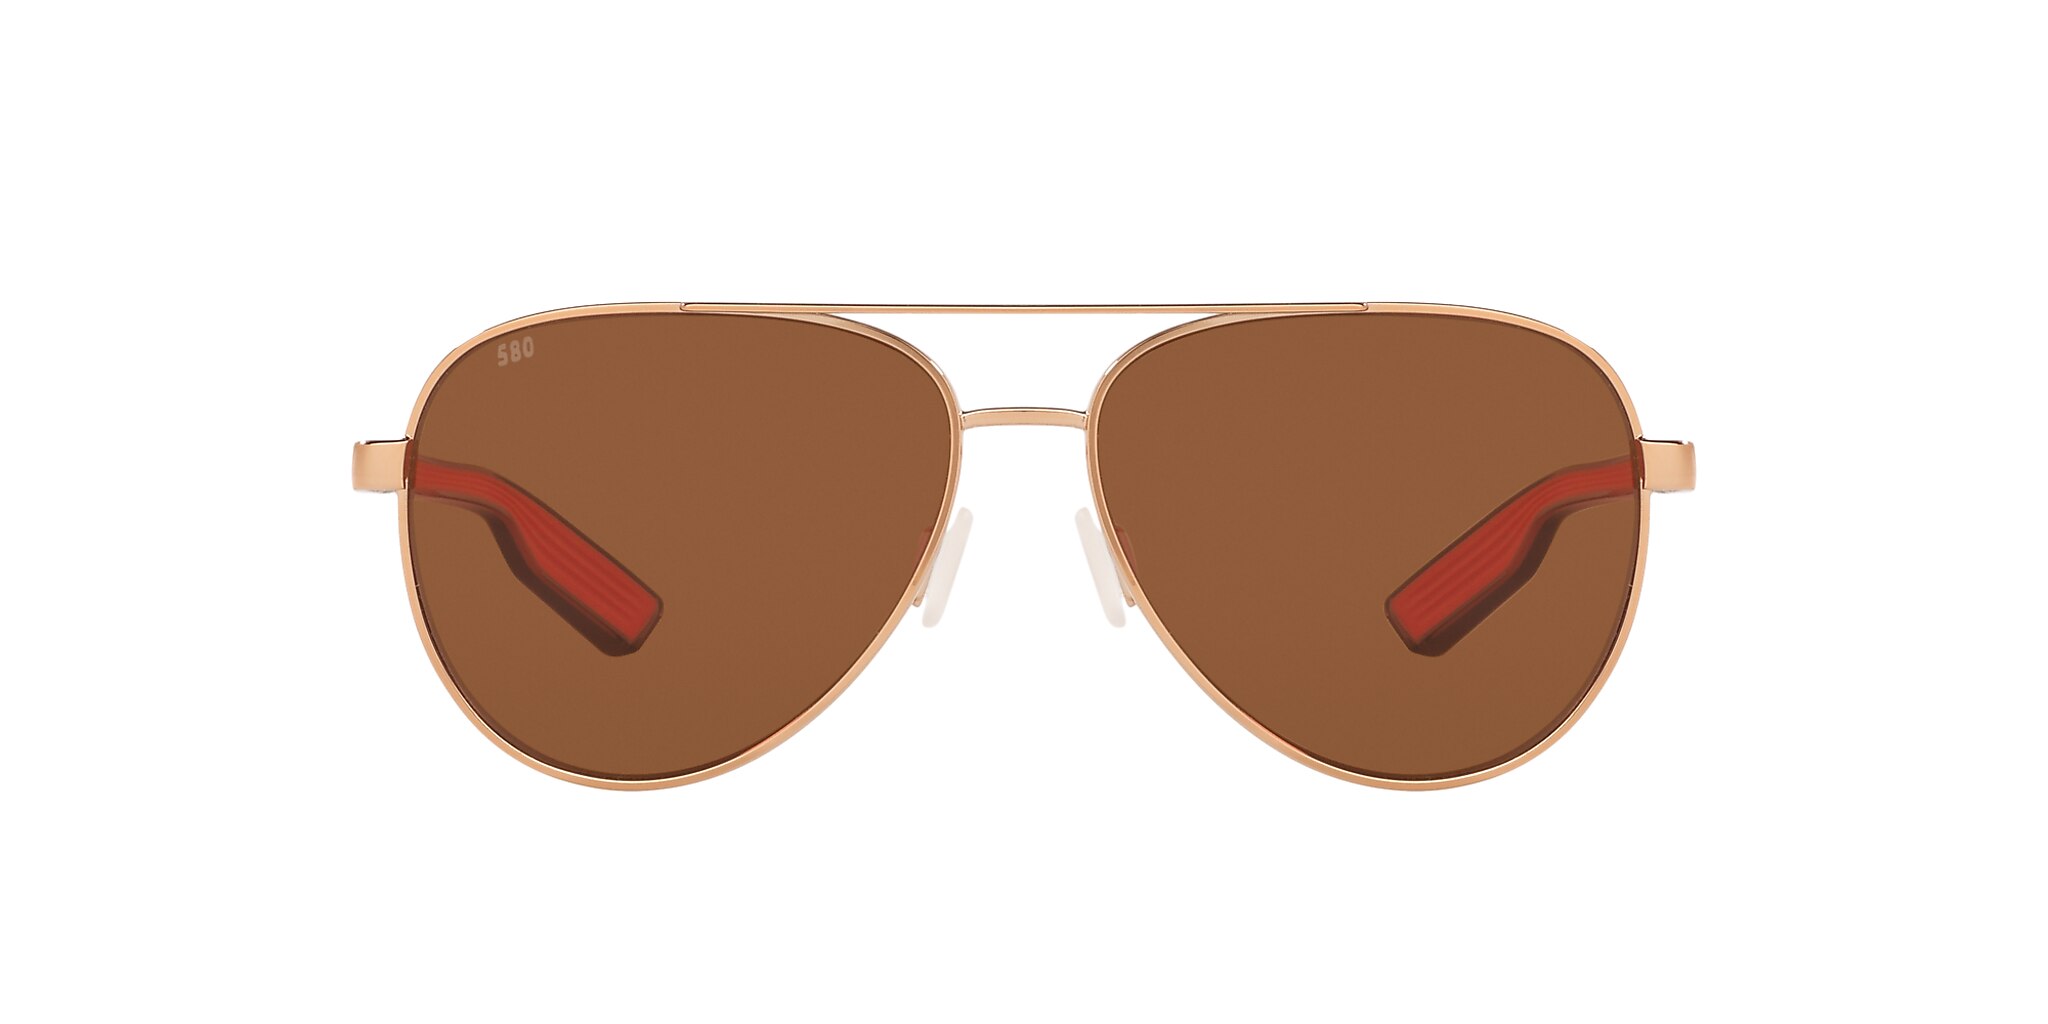 Peli Polarized Sunglasses in Copper | Costa Del Mar®